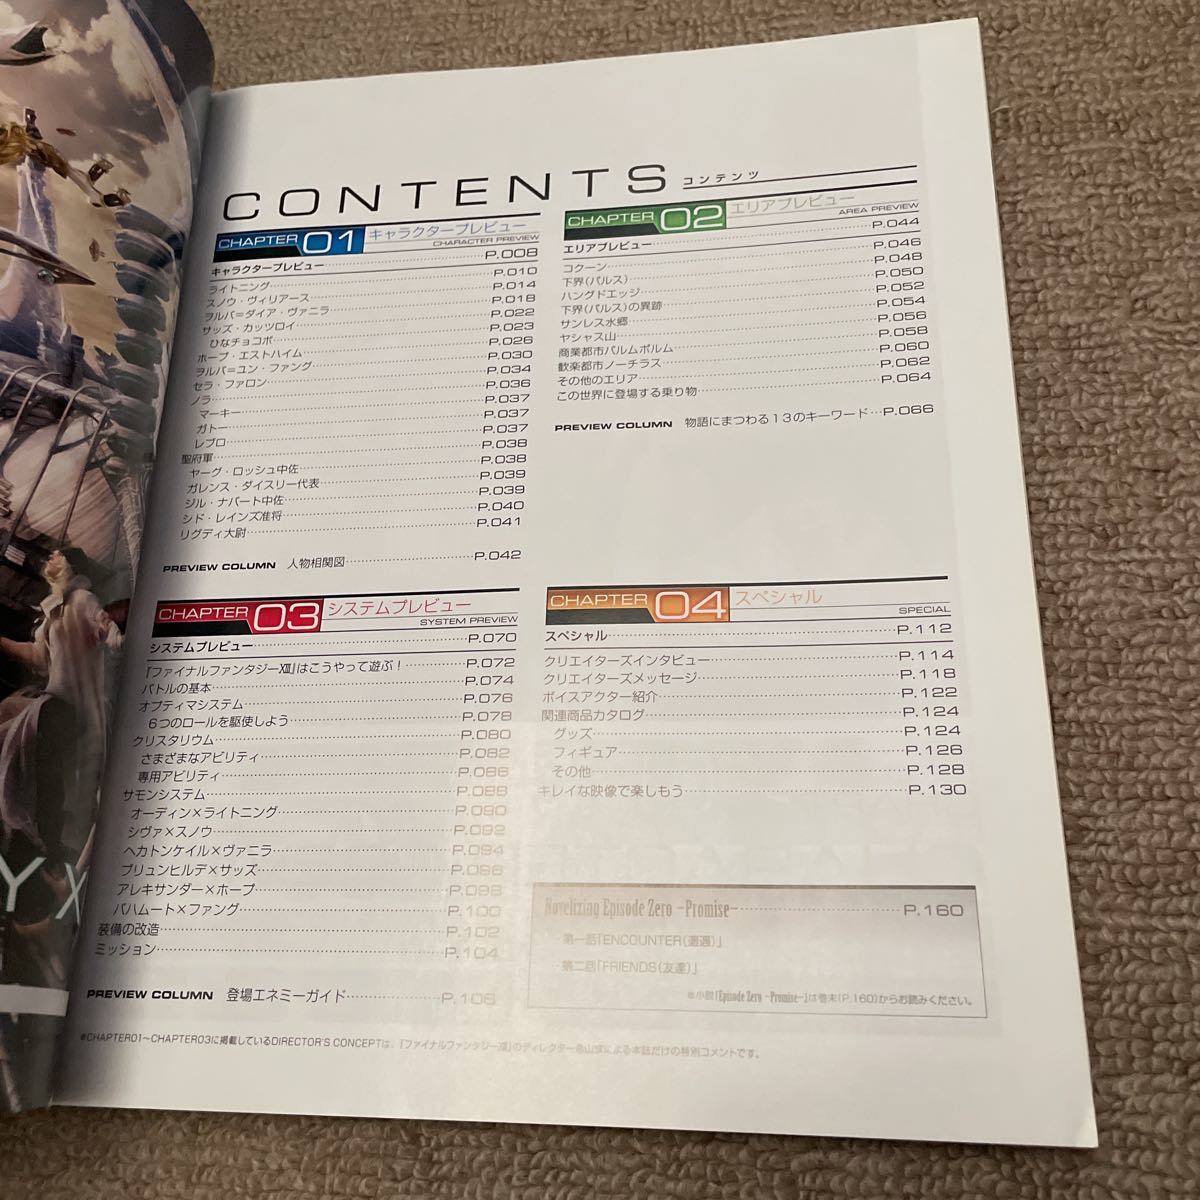 ファイナルファンタジーXIII ワールドプレビュー (SE-MOOK)